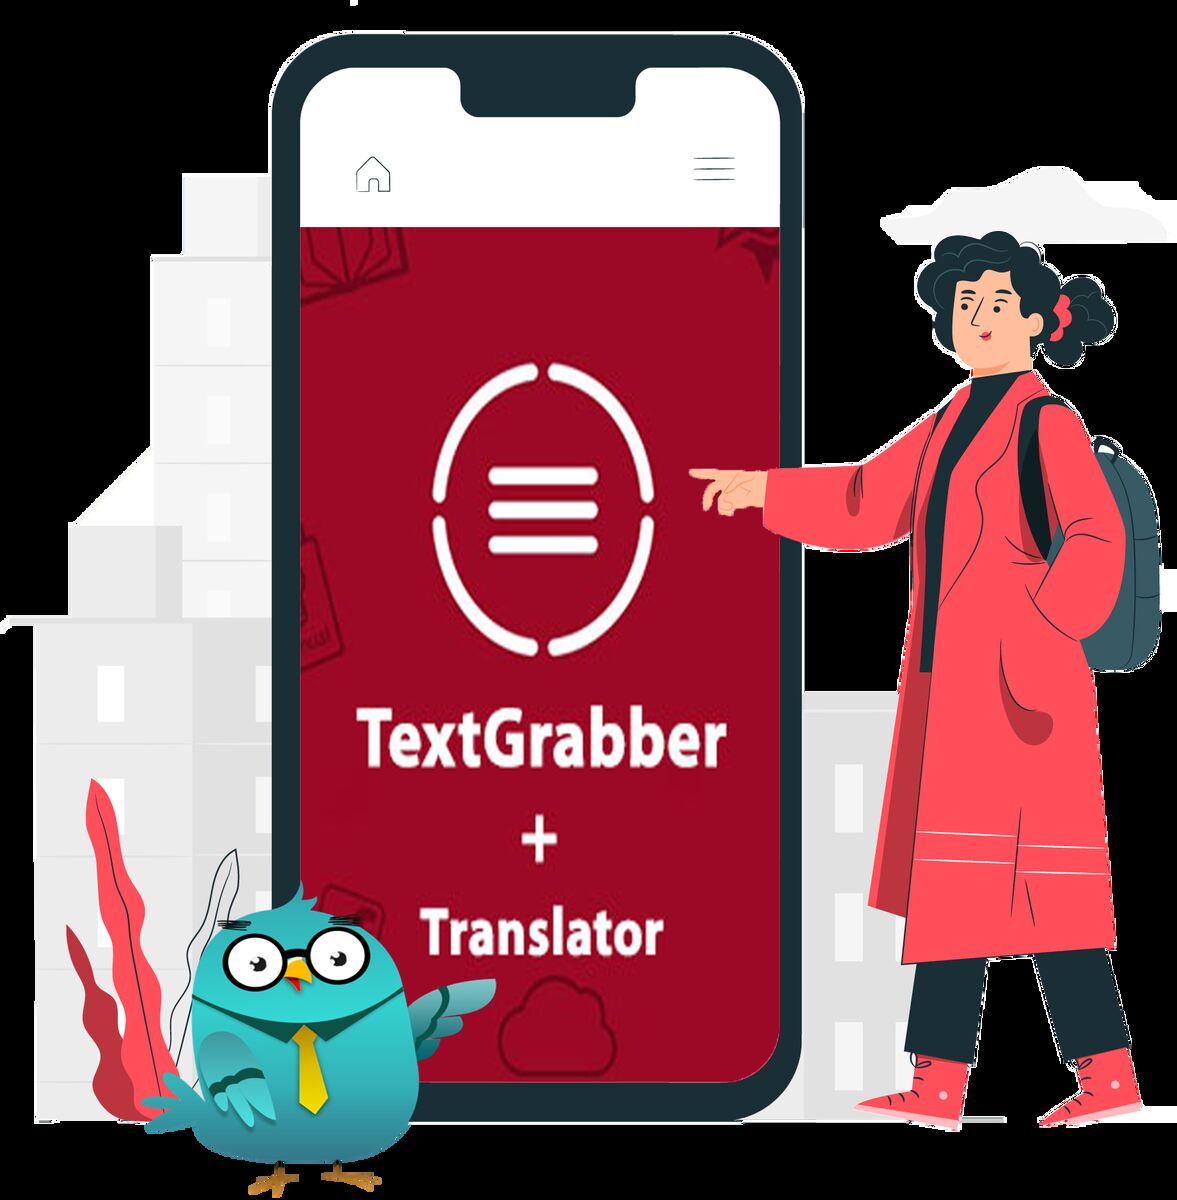 Text grabber